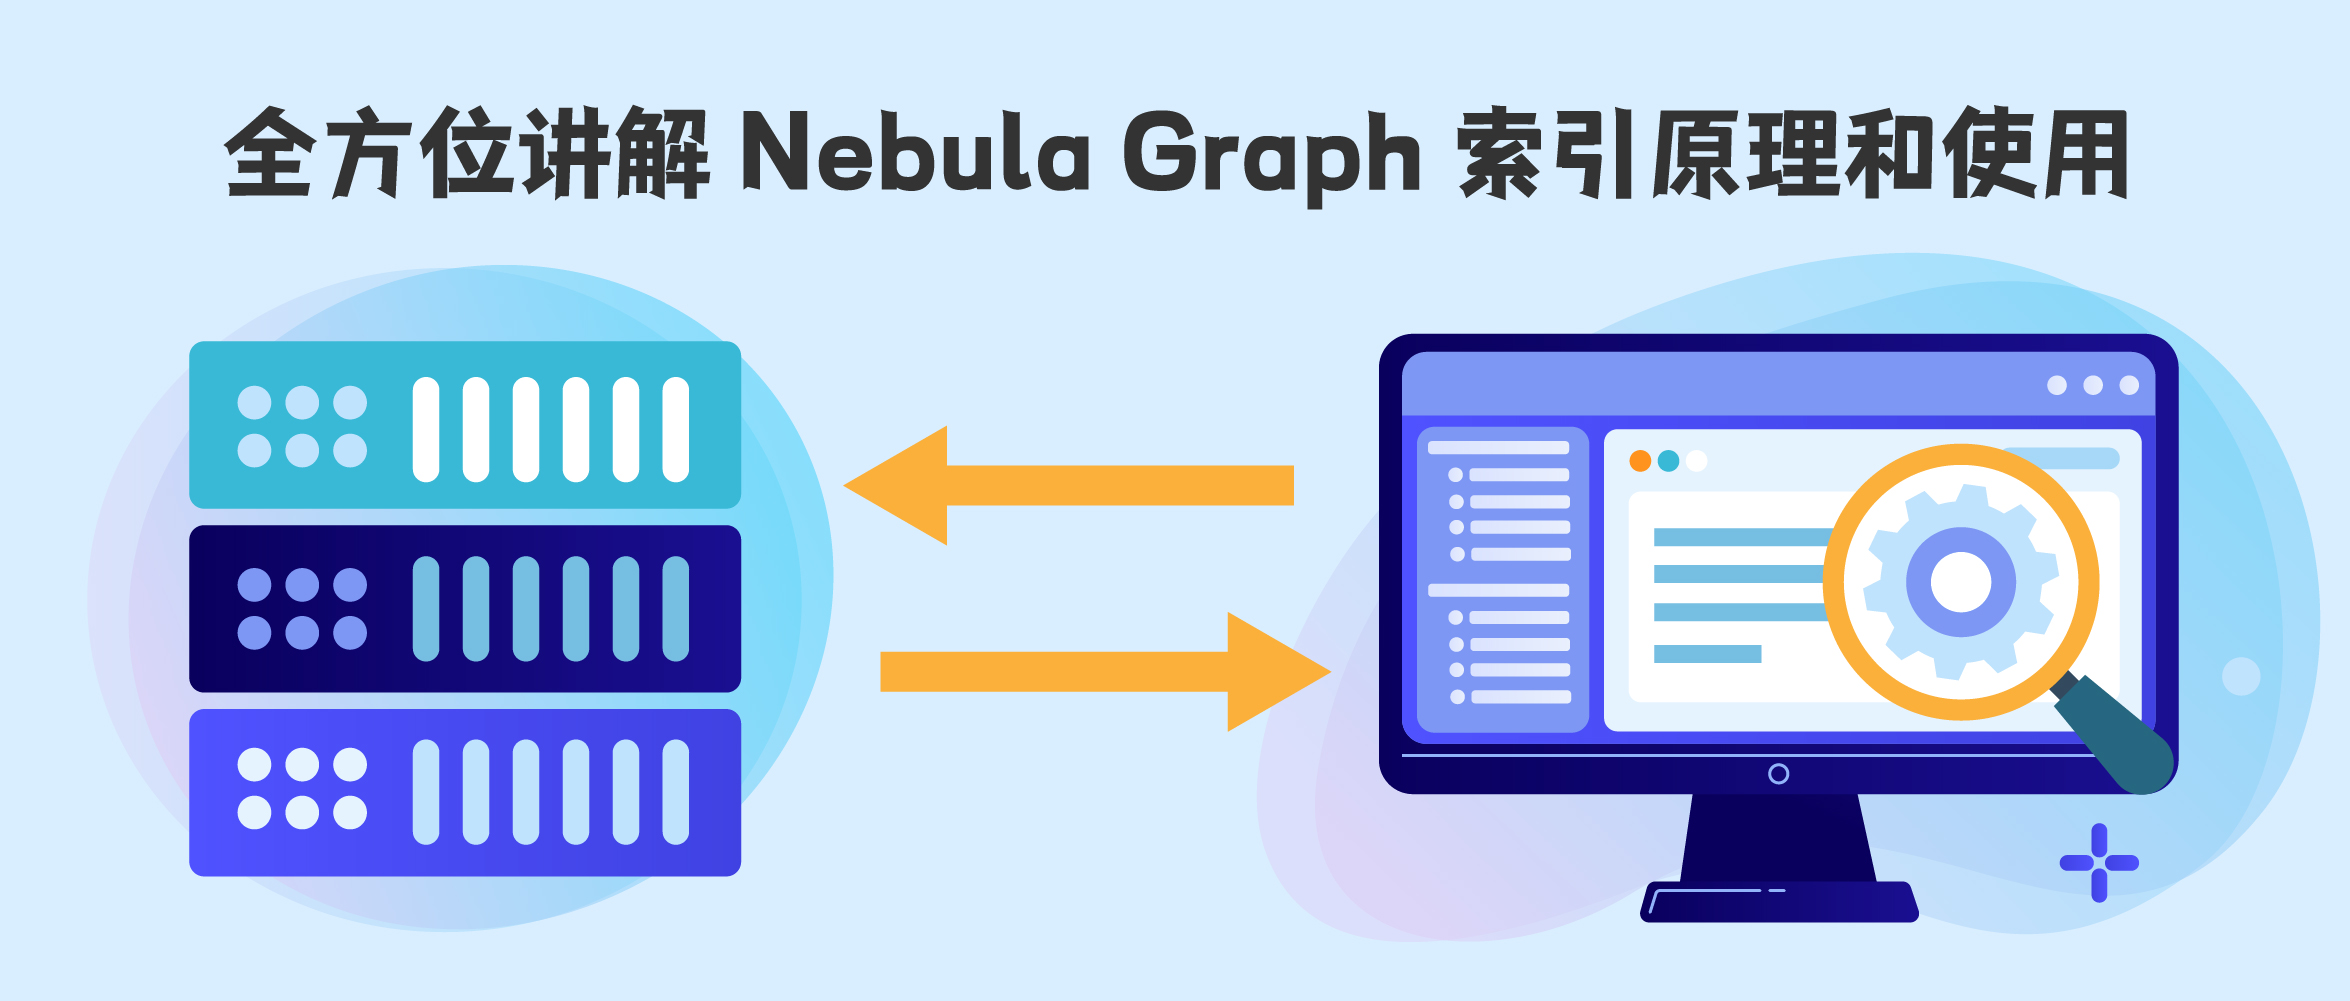 全方位讲解 NebulaGraph 索引原理和使用